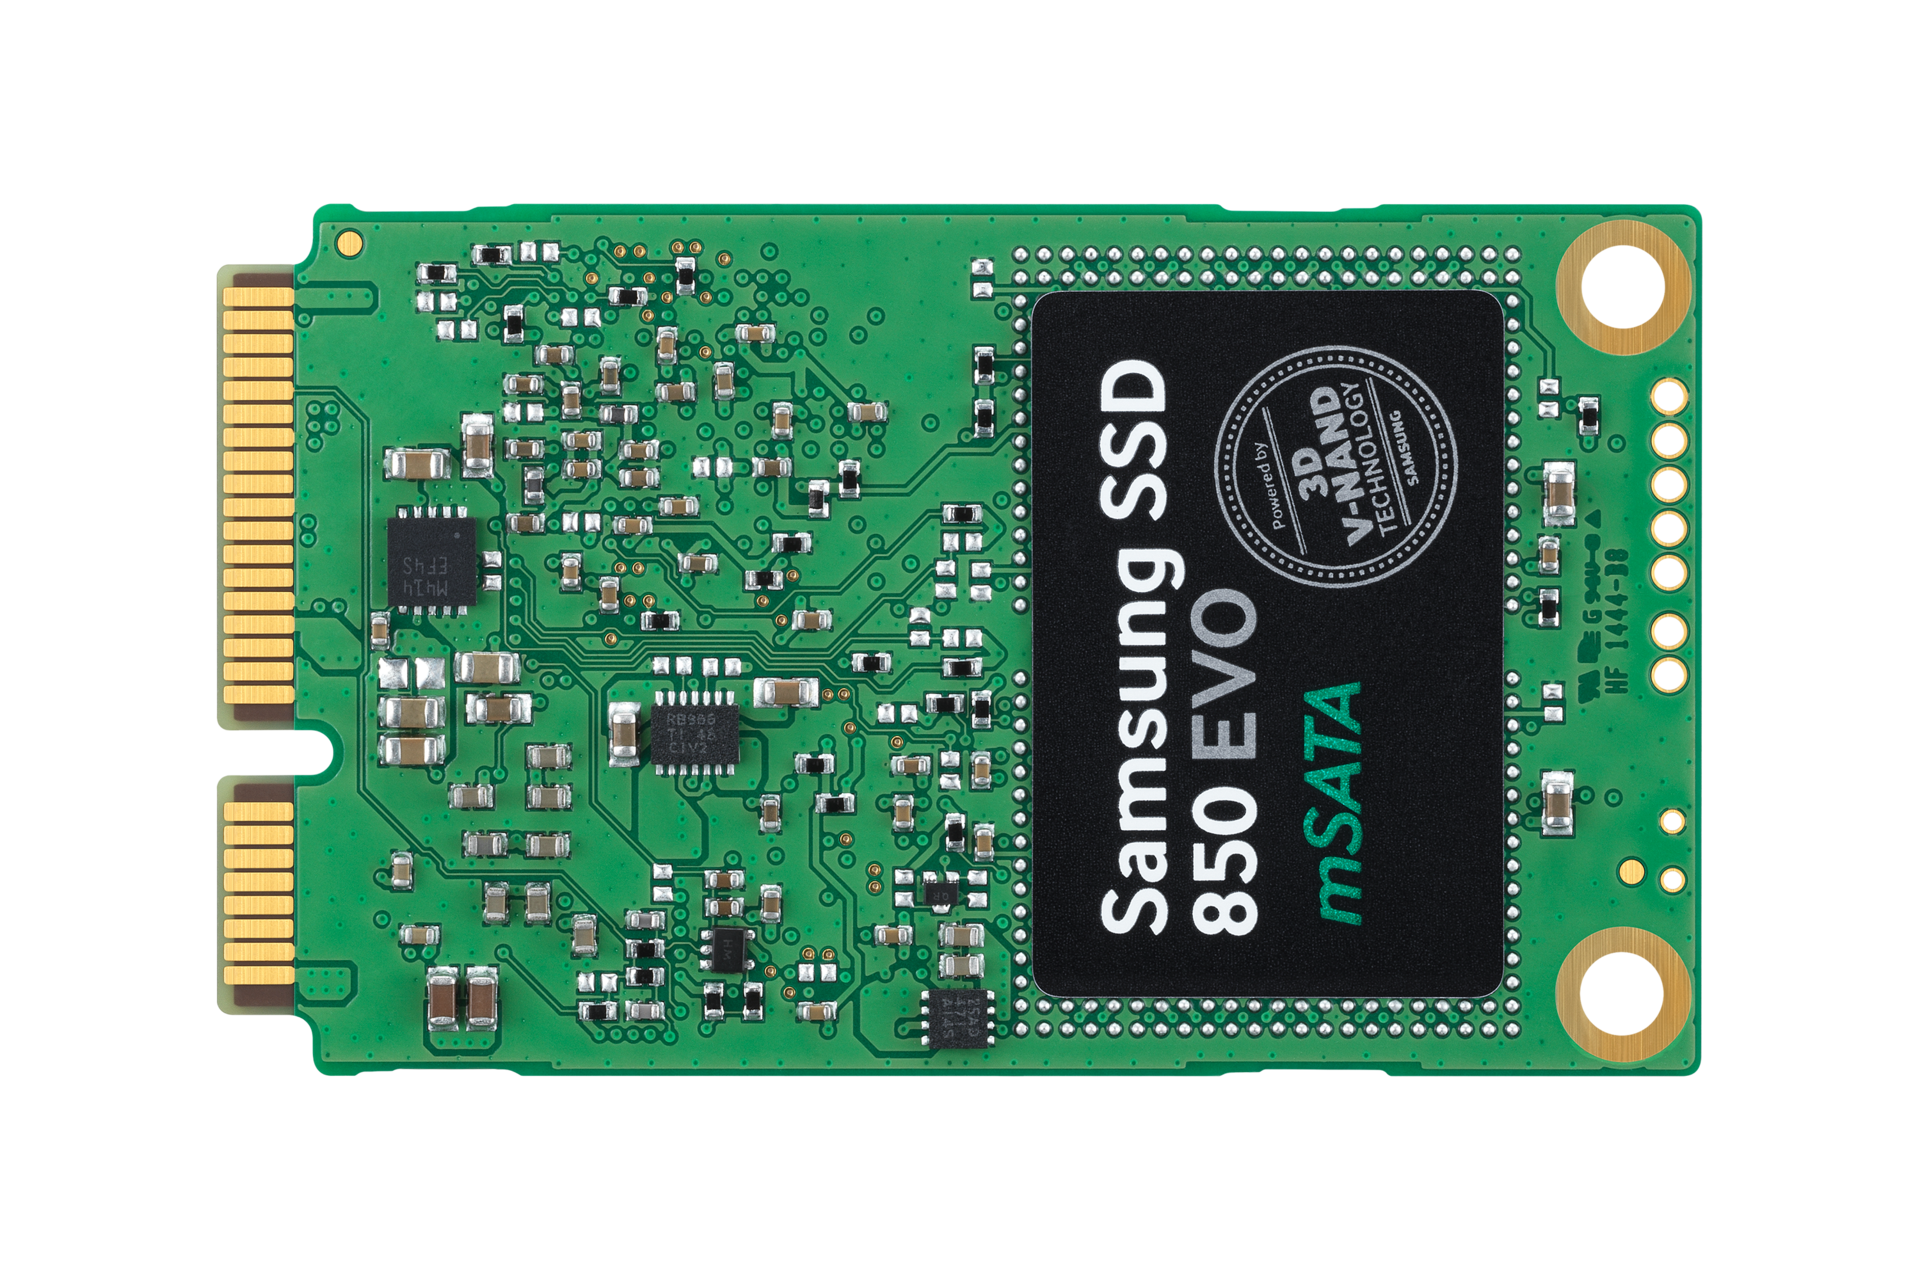 SSD 860 EVO SATA III mSATA 500 Go